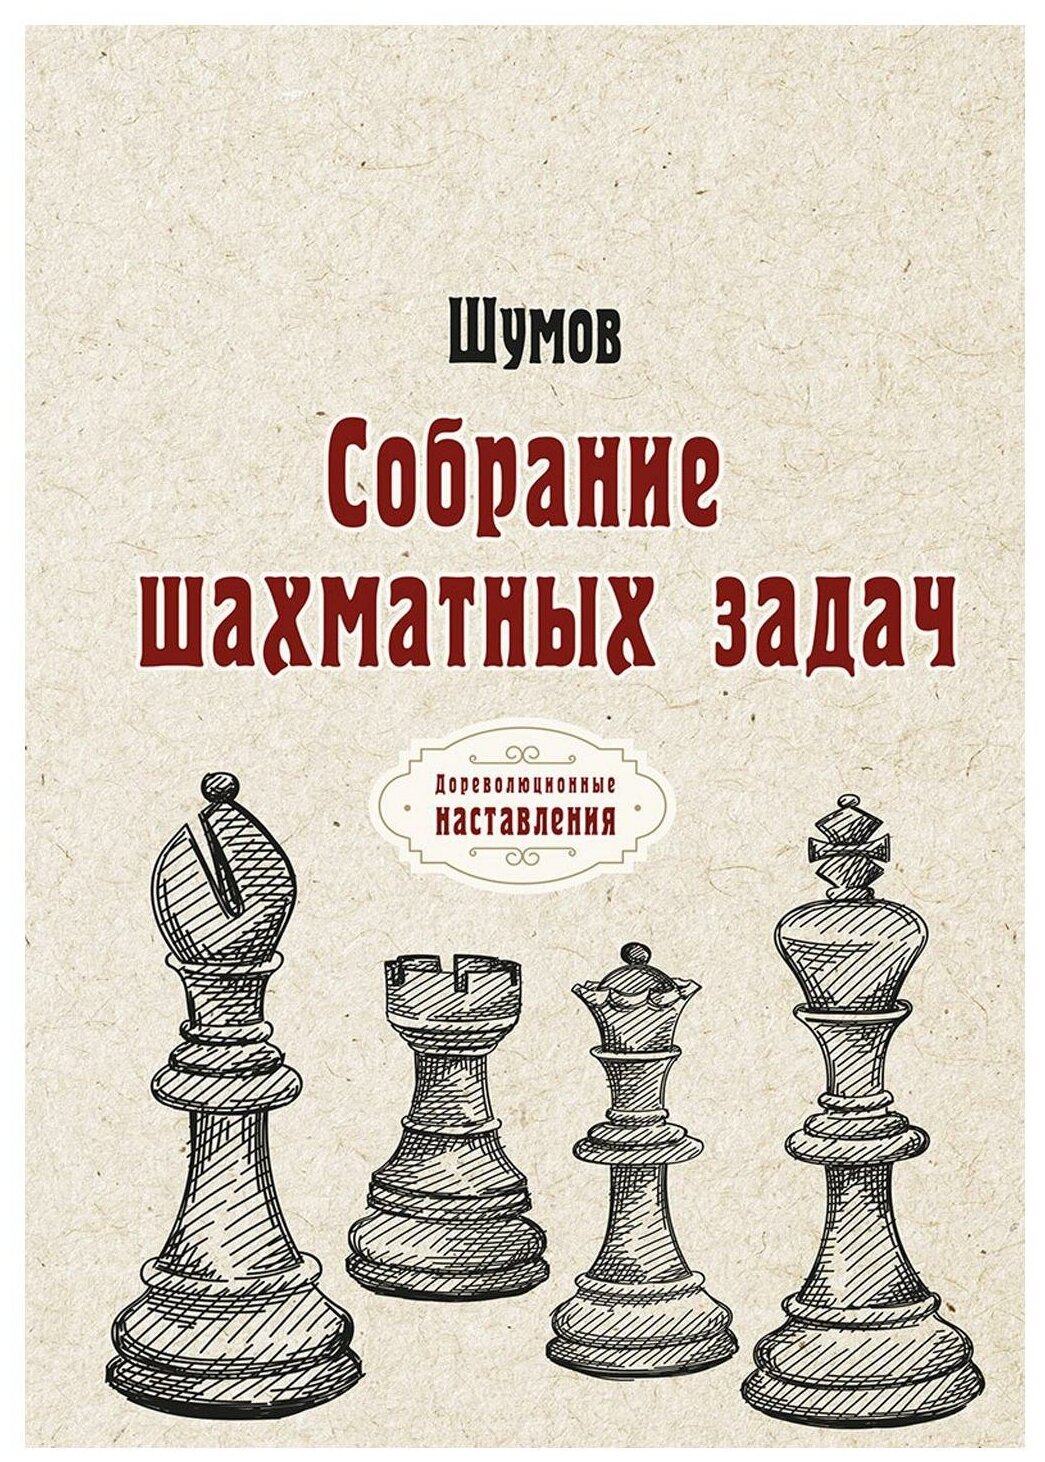 Собрание шахматных задач: репринт. Шумов Т8 RUGRAM